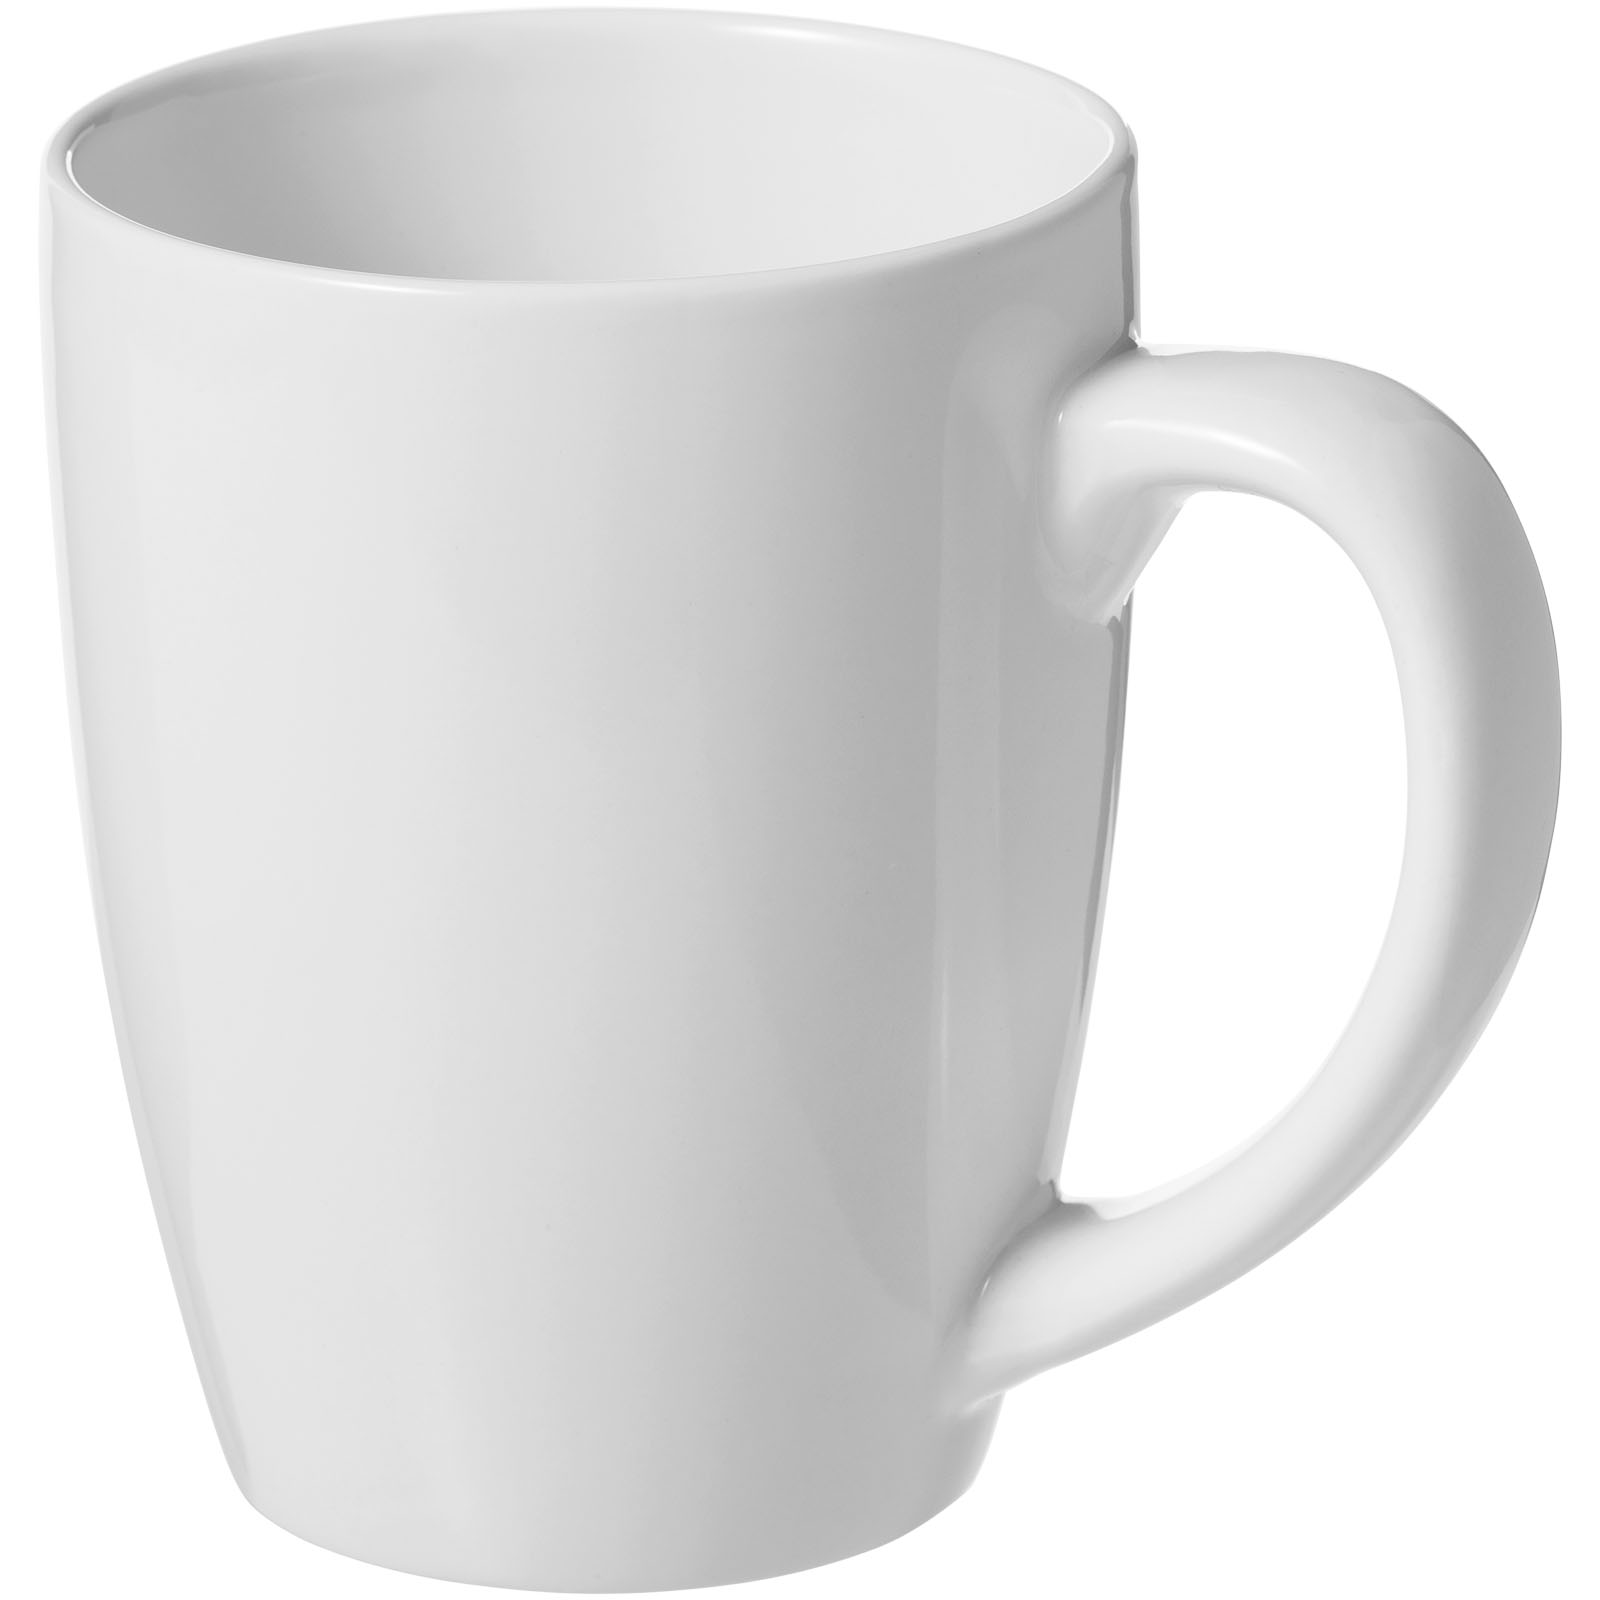 Standard mugs - Bogota 350 ml ceramic mug